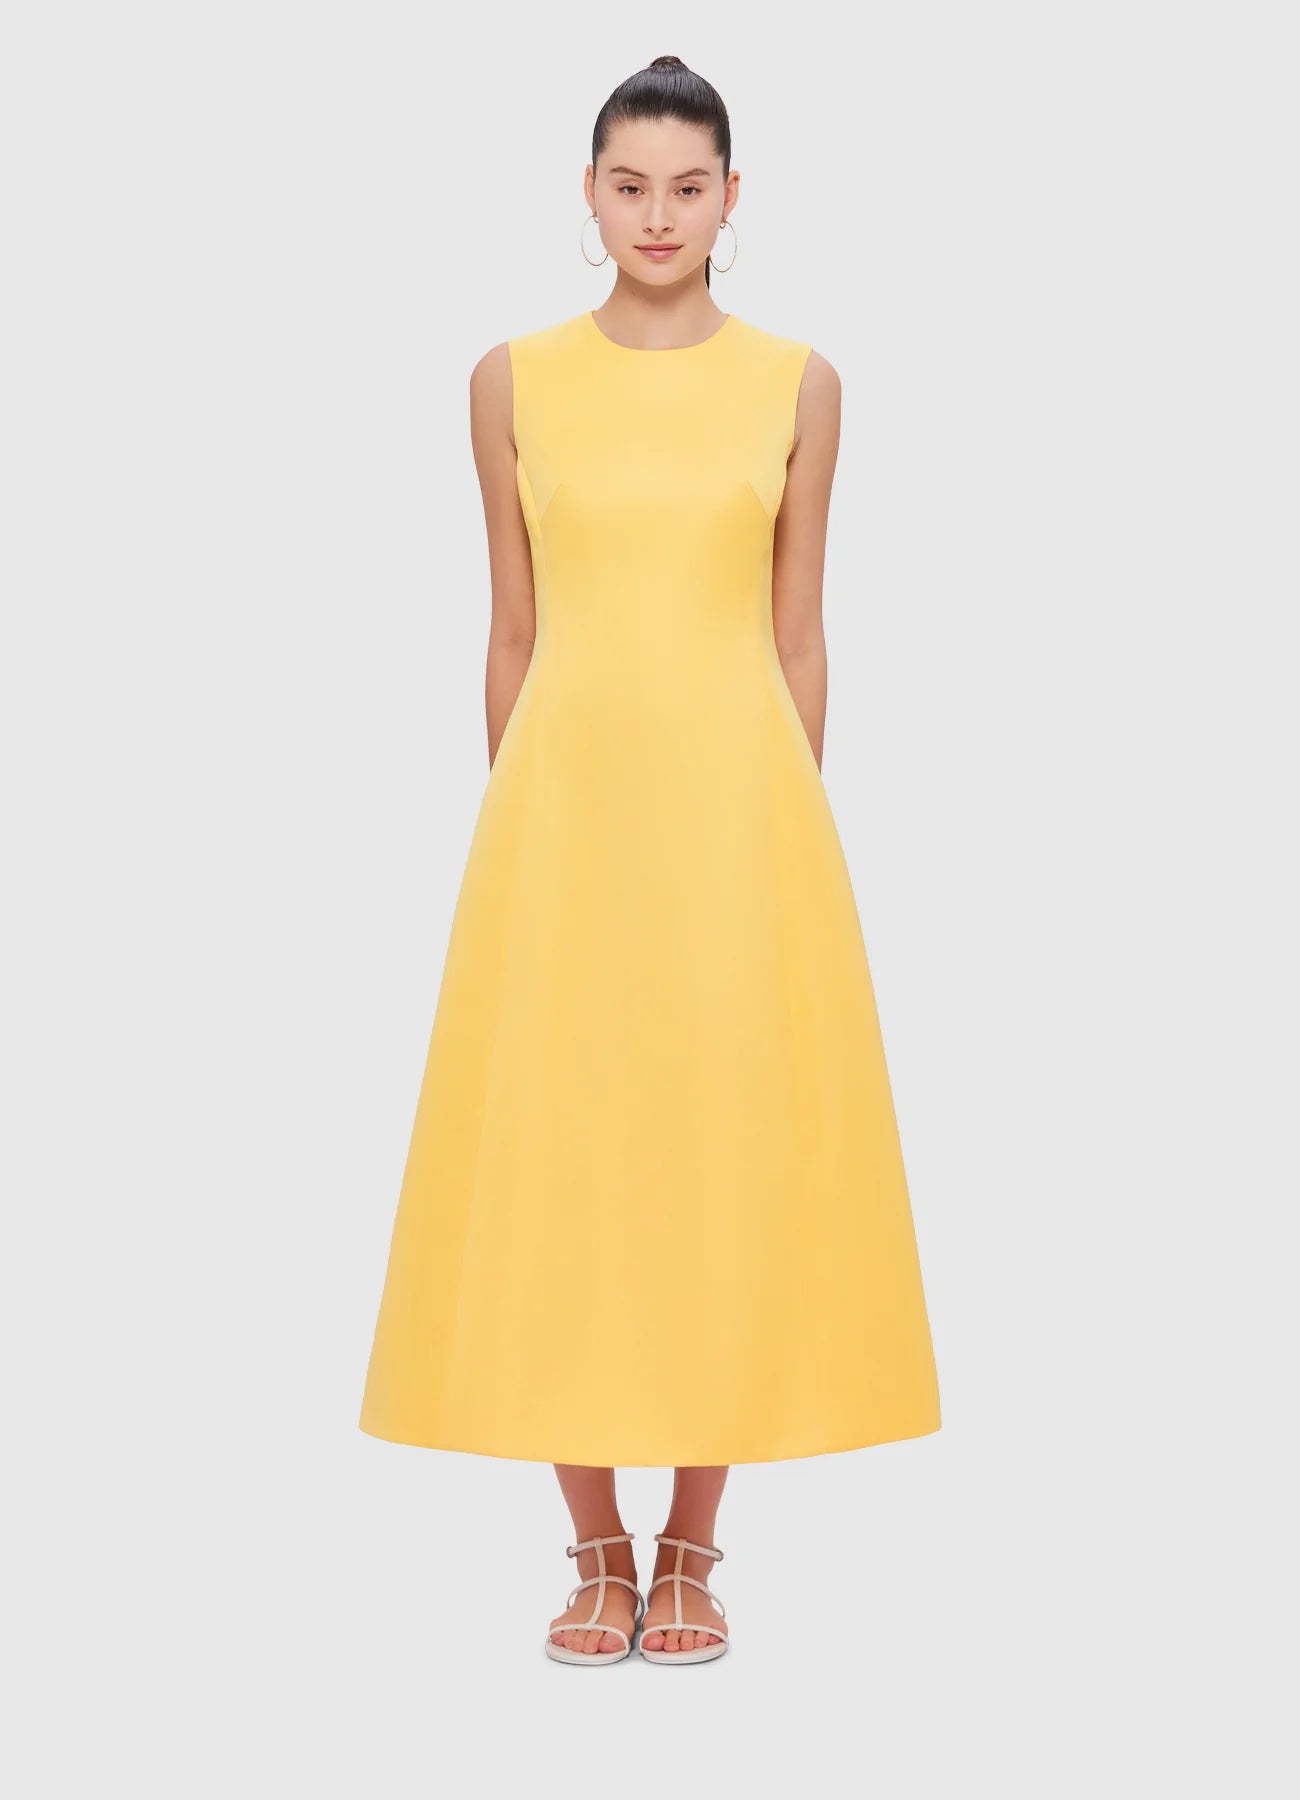 LEO LIN - Cleo Sleeveless Midi Dress in Canary